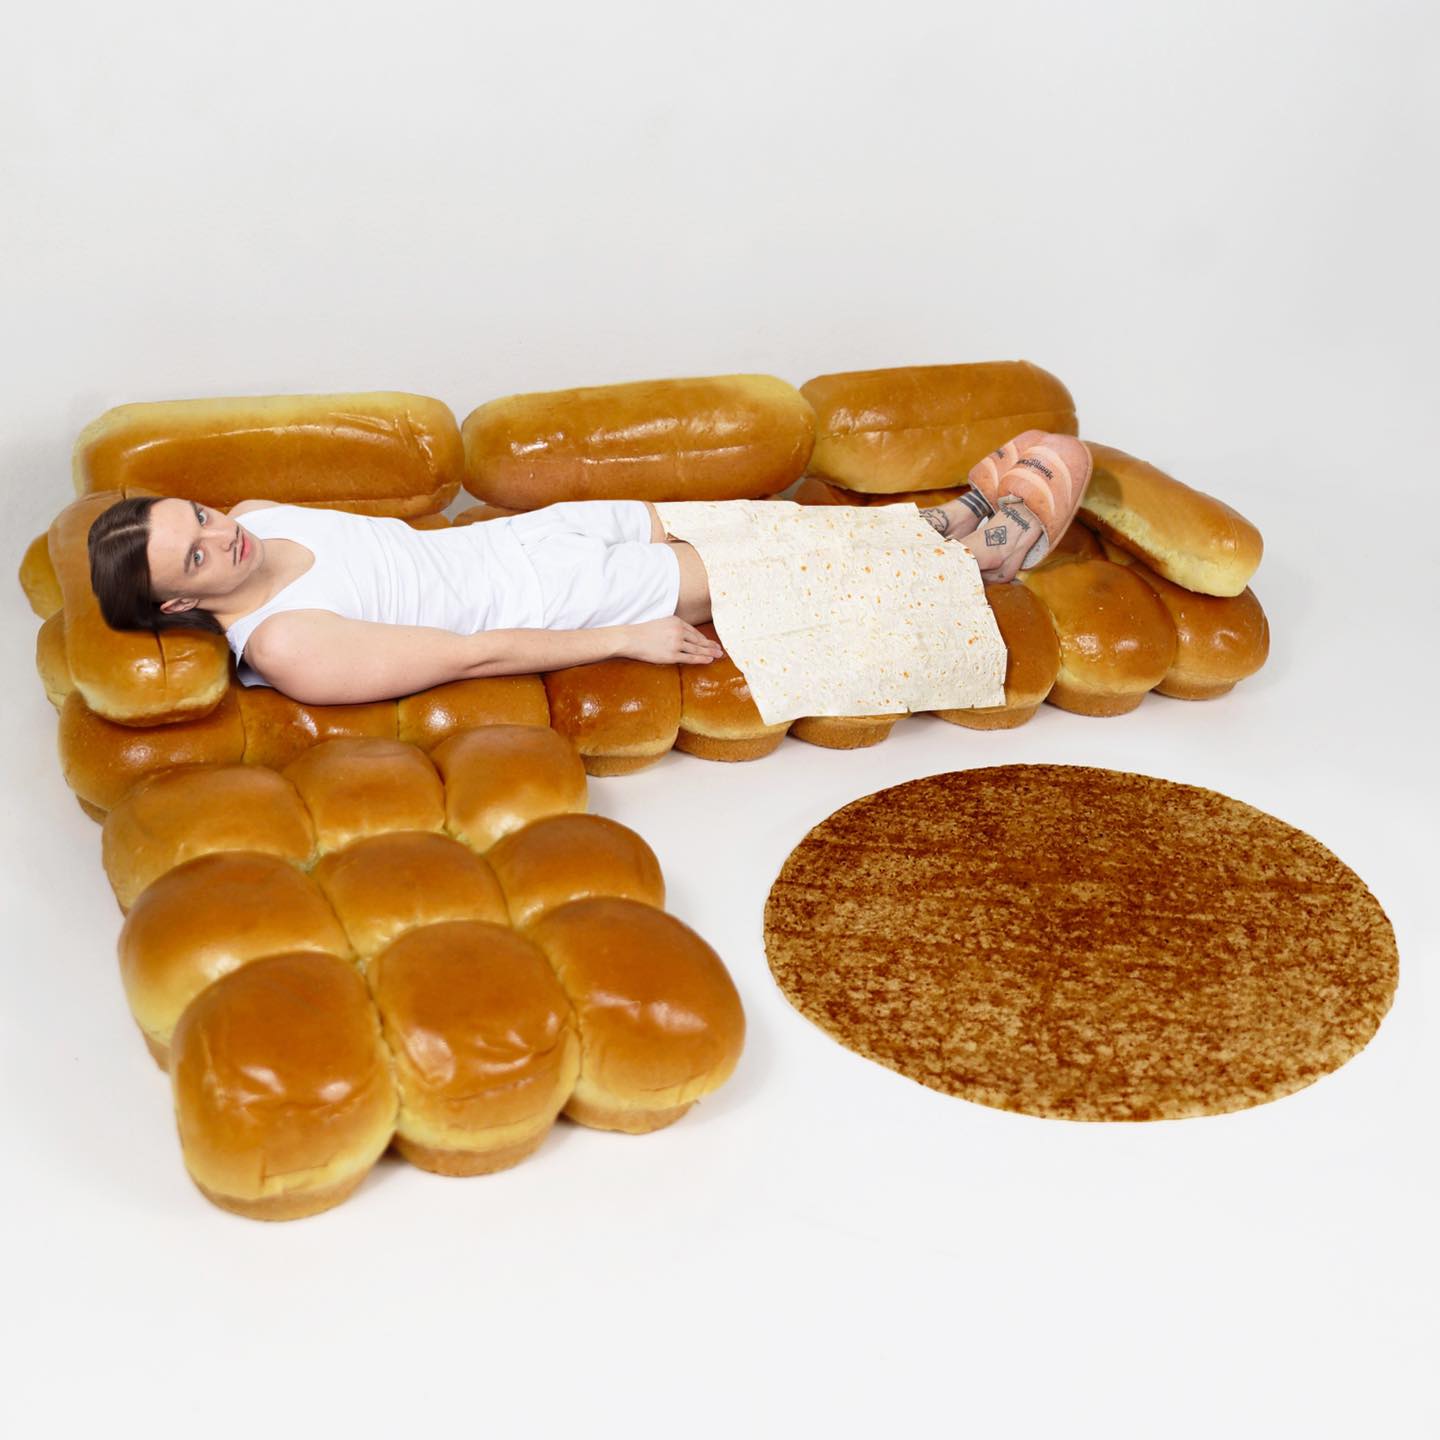 IKEAで買えるかも!?焼きたてのパンで作ったようなソファが話題に